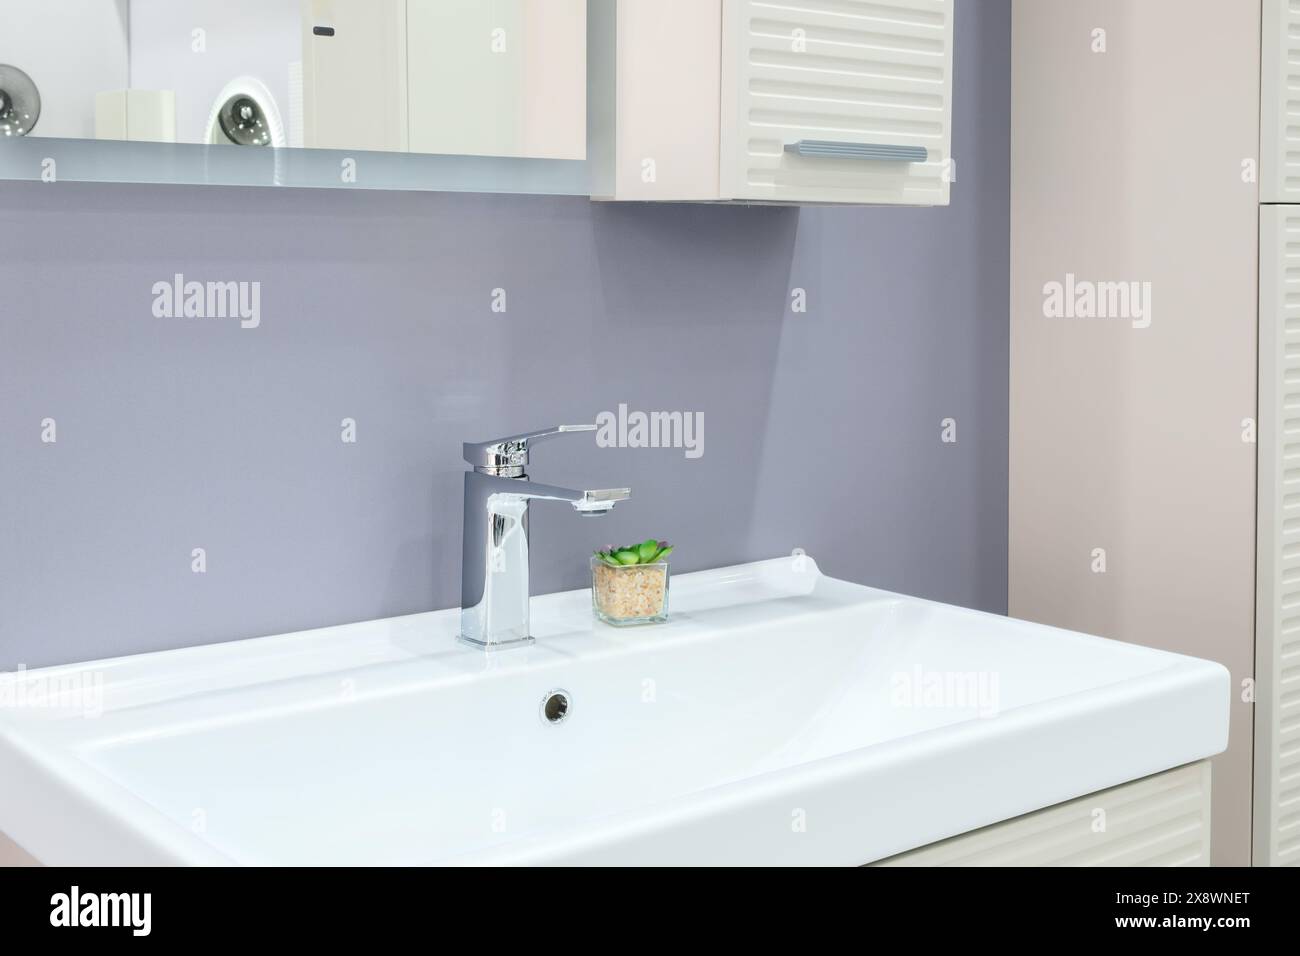 Ein Waschbecken im Badezimmer mit Wasserhahn und einer weißen Ablagefläche Stockfoto